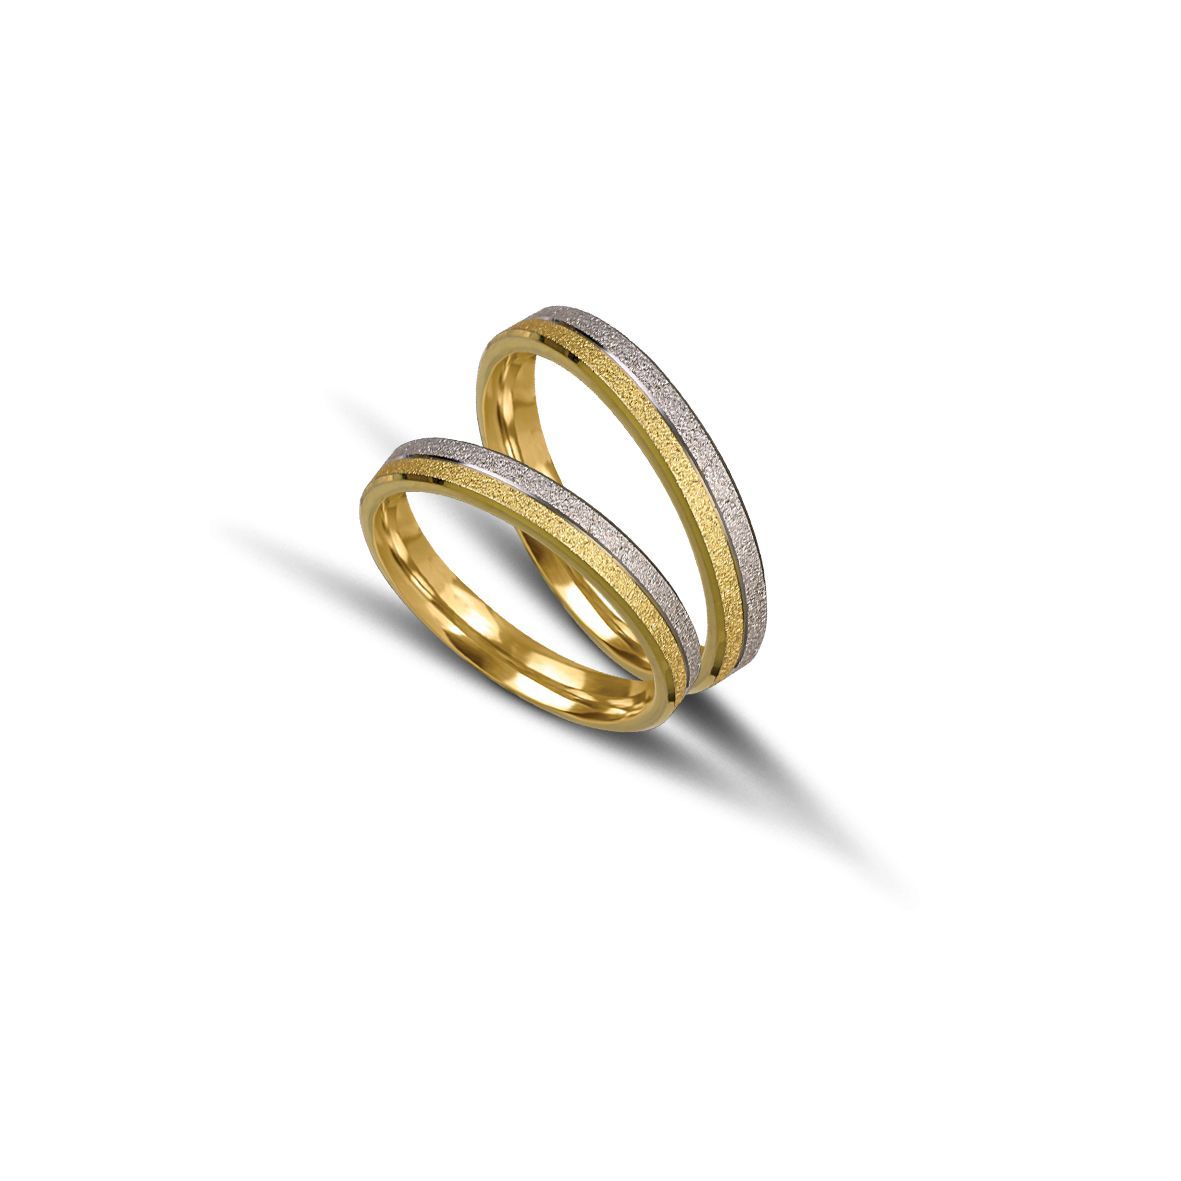 White gold & gold wedding rings 3.3mm (code VK1047/33)